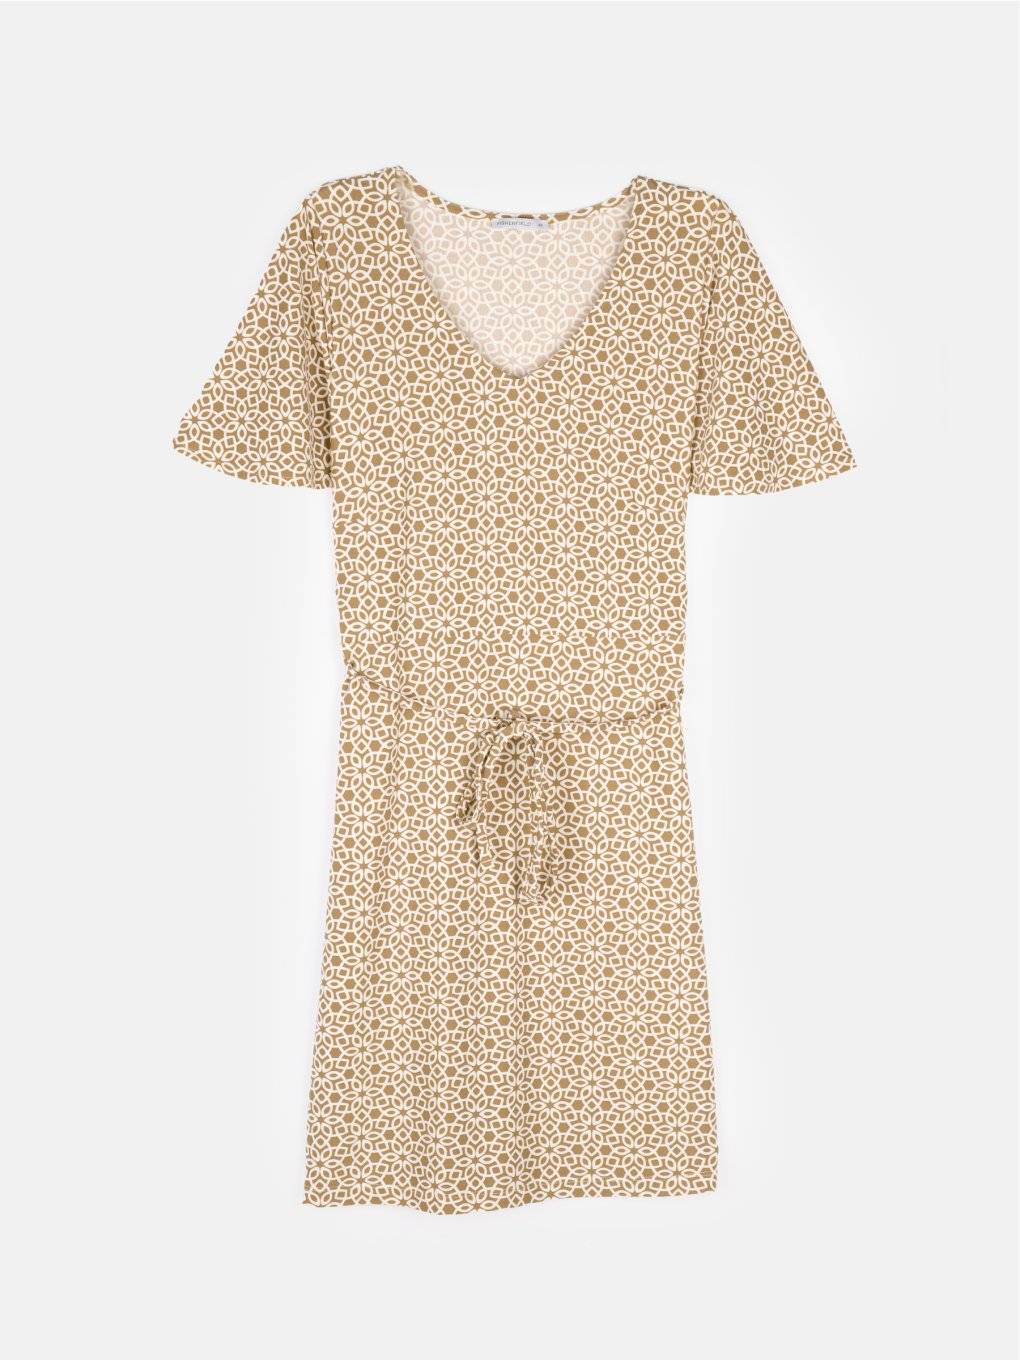 Ladies short sleeve printed dress